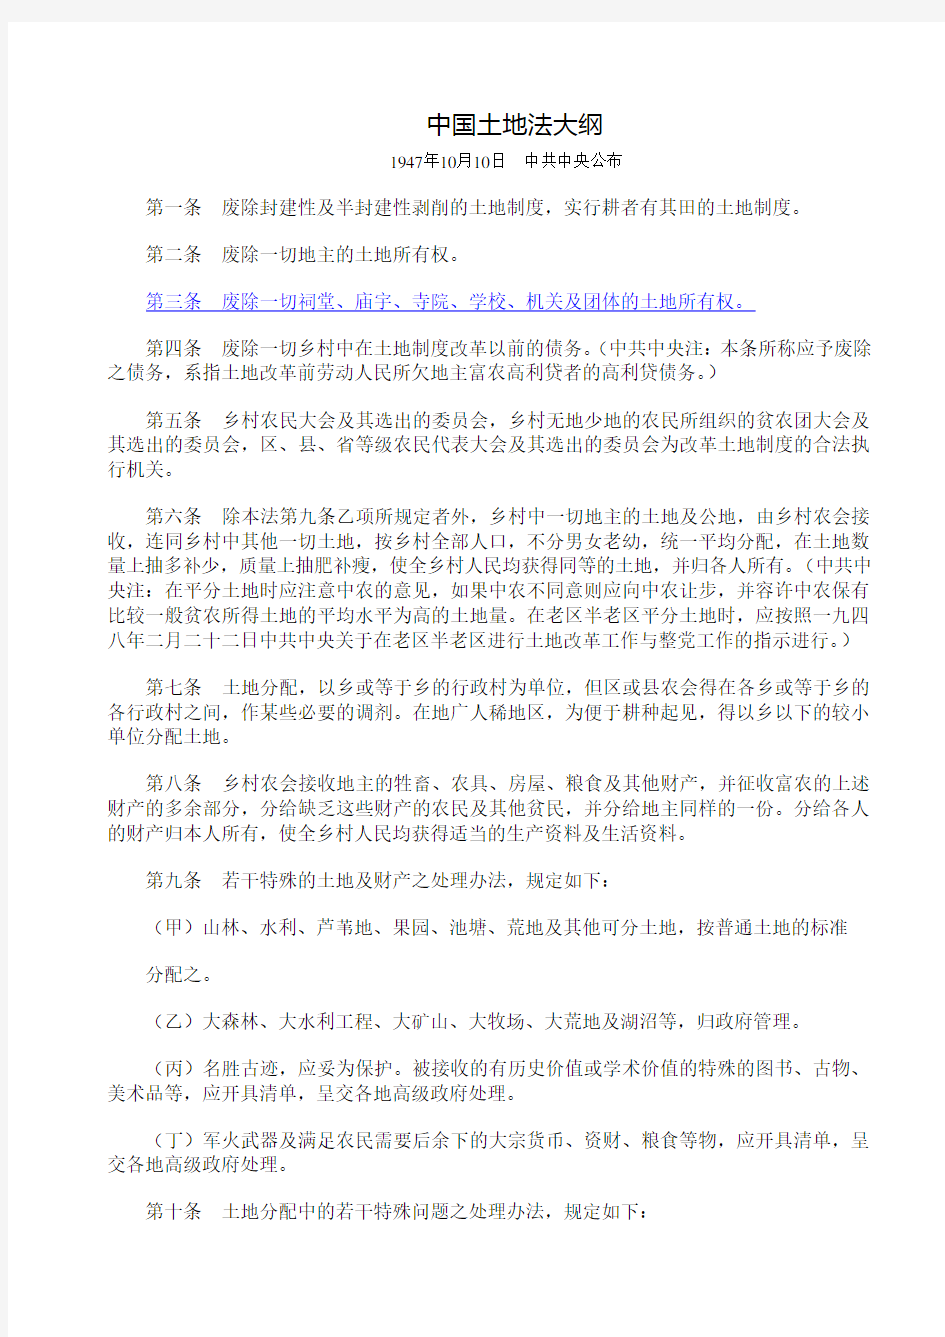 中国土地法大纲(1947年10月10日公布)